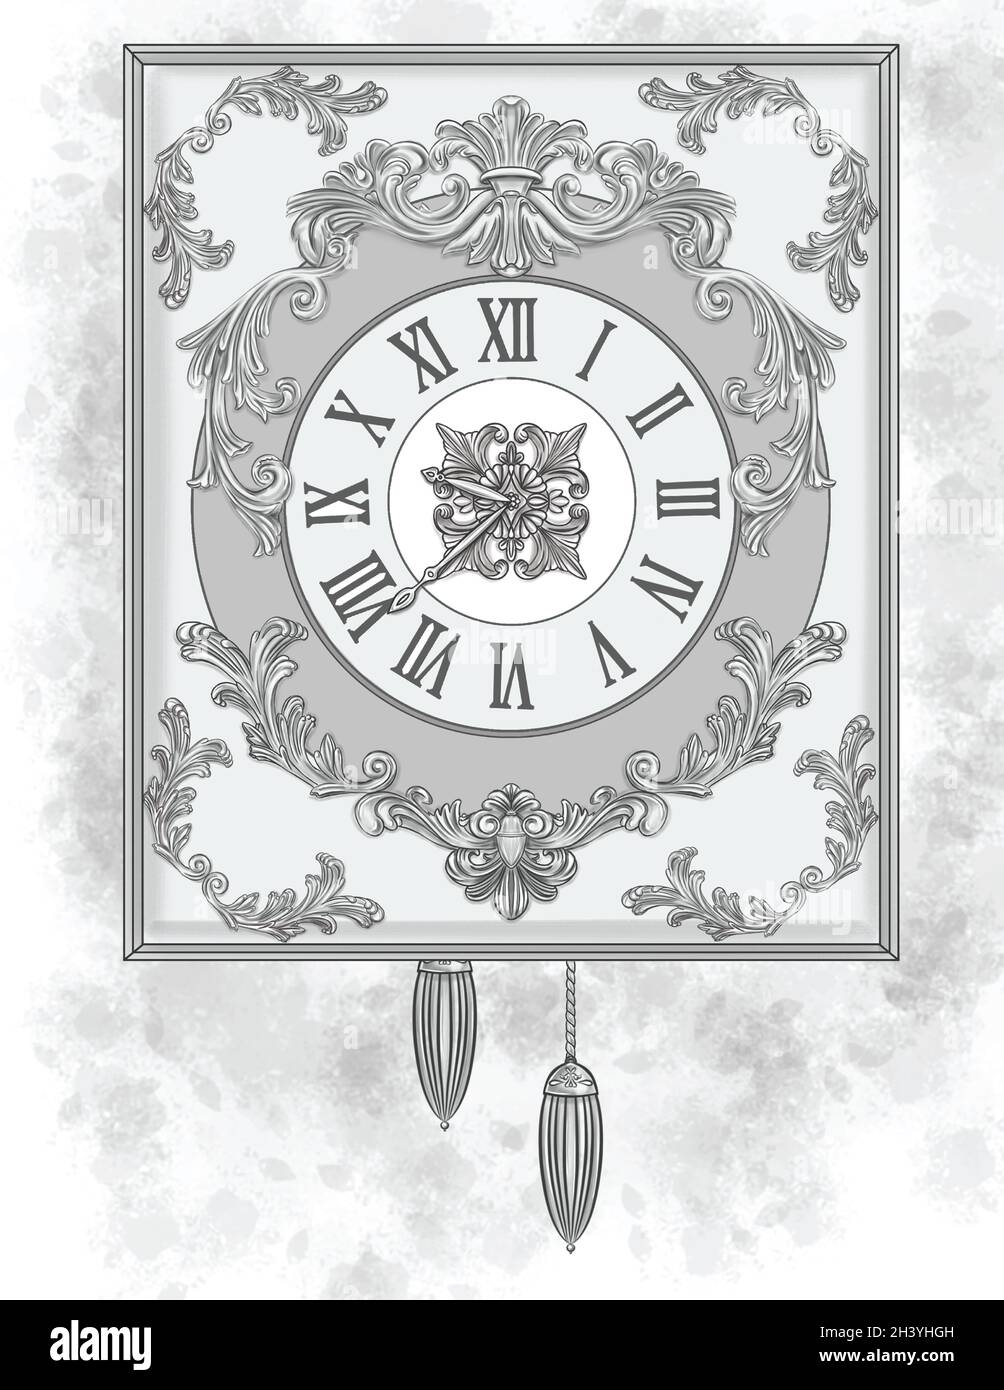 Große Klassische Uhr Mit Schönen Schnitzereien Designs Farblose Linienzeichnung. Vintage Wanduhr mit geschnitztem Design C Stockfoto